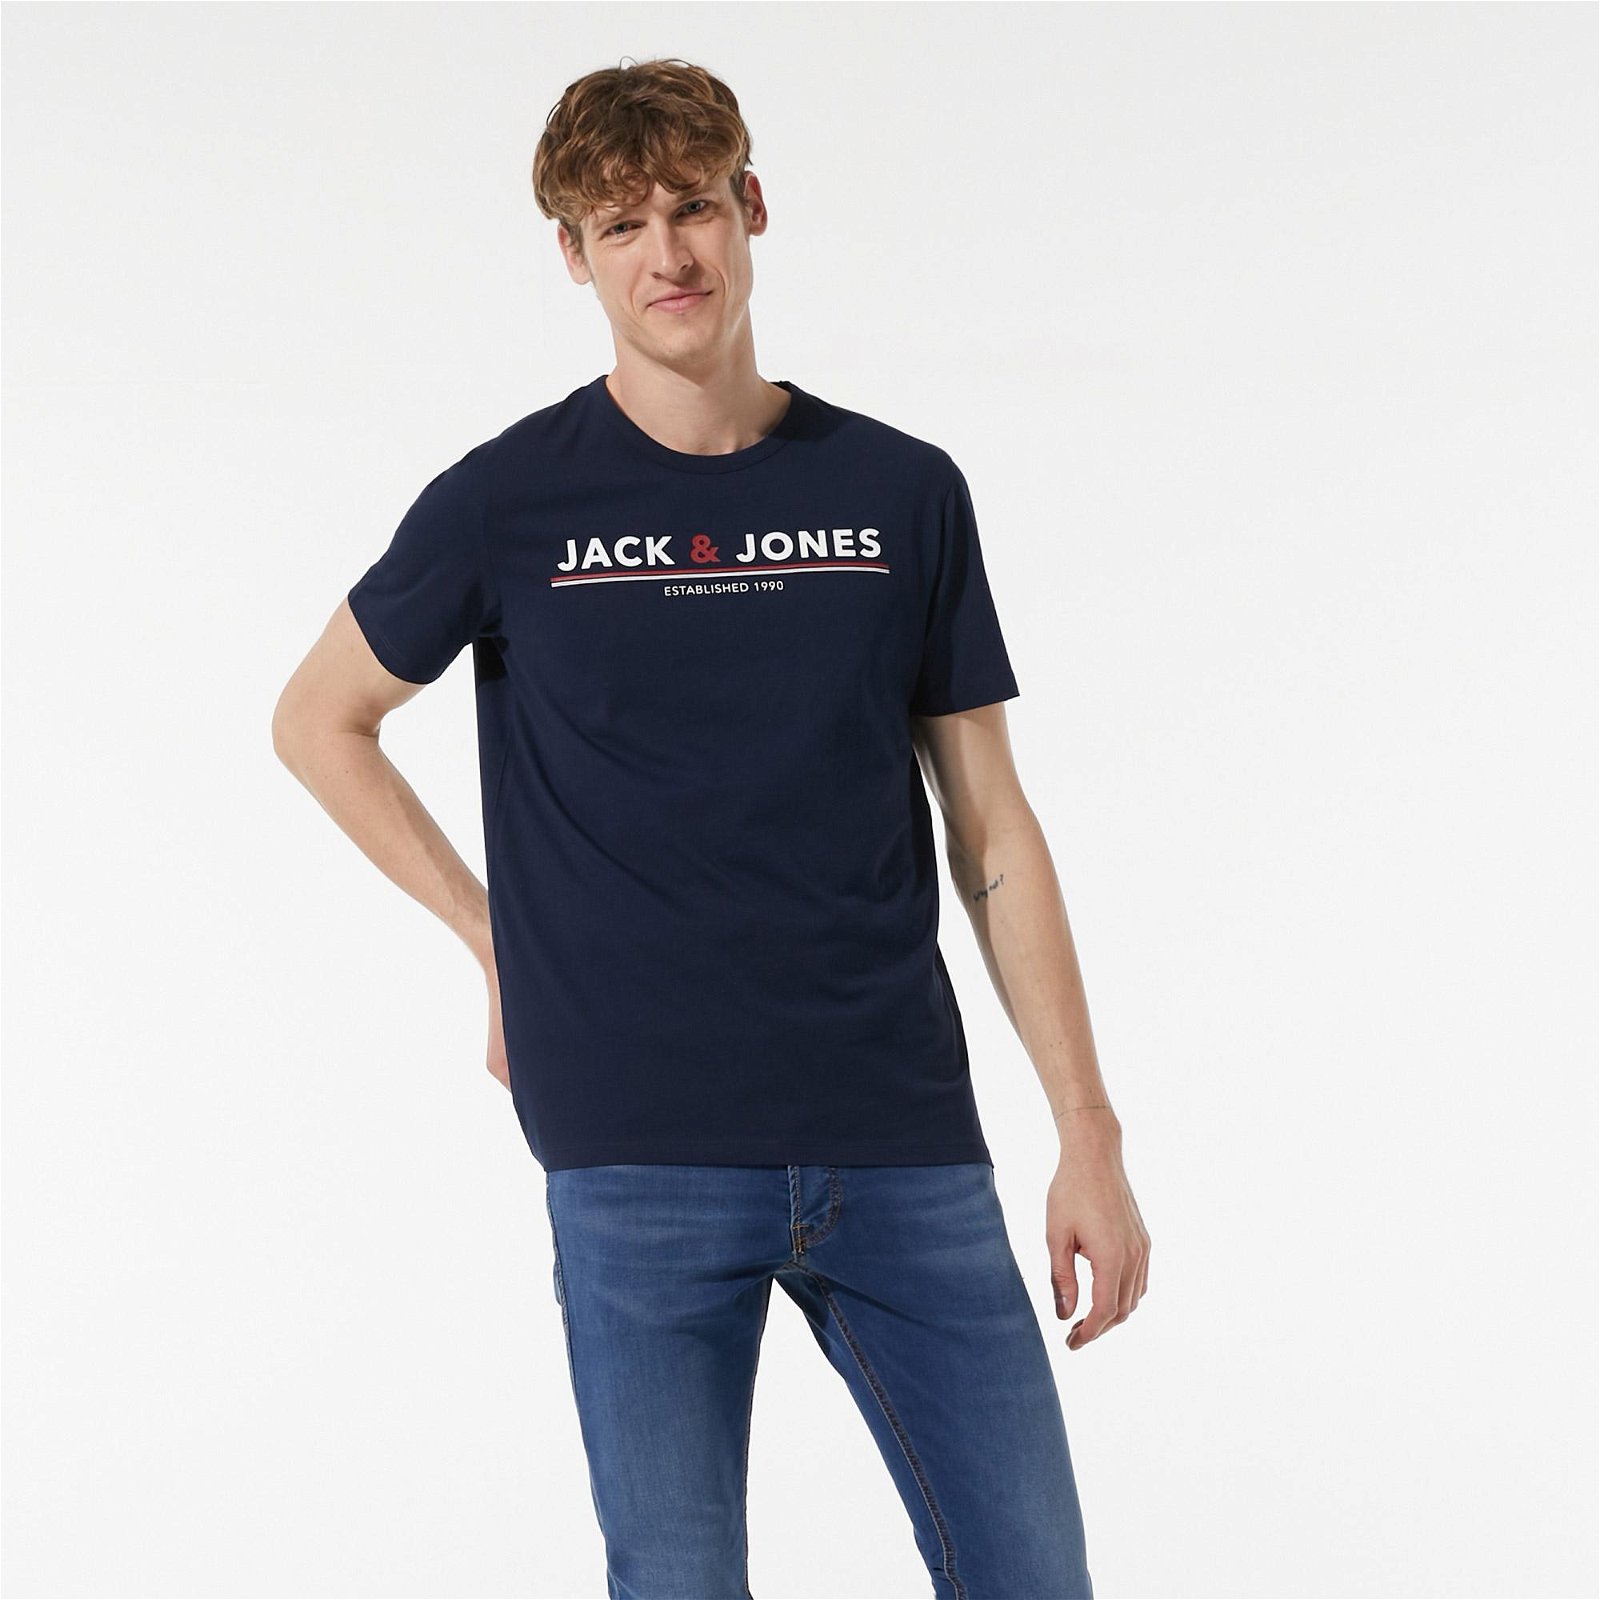 Jack & Jones Jacmont Erkek Lacivert T-Shirt